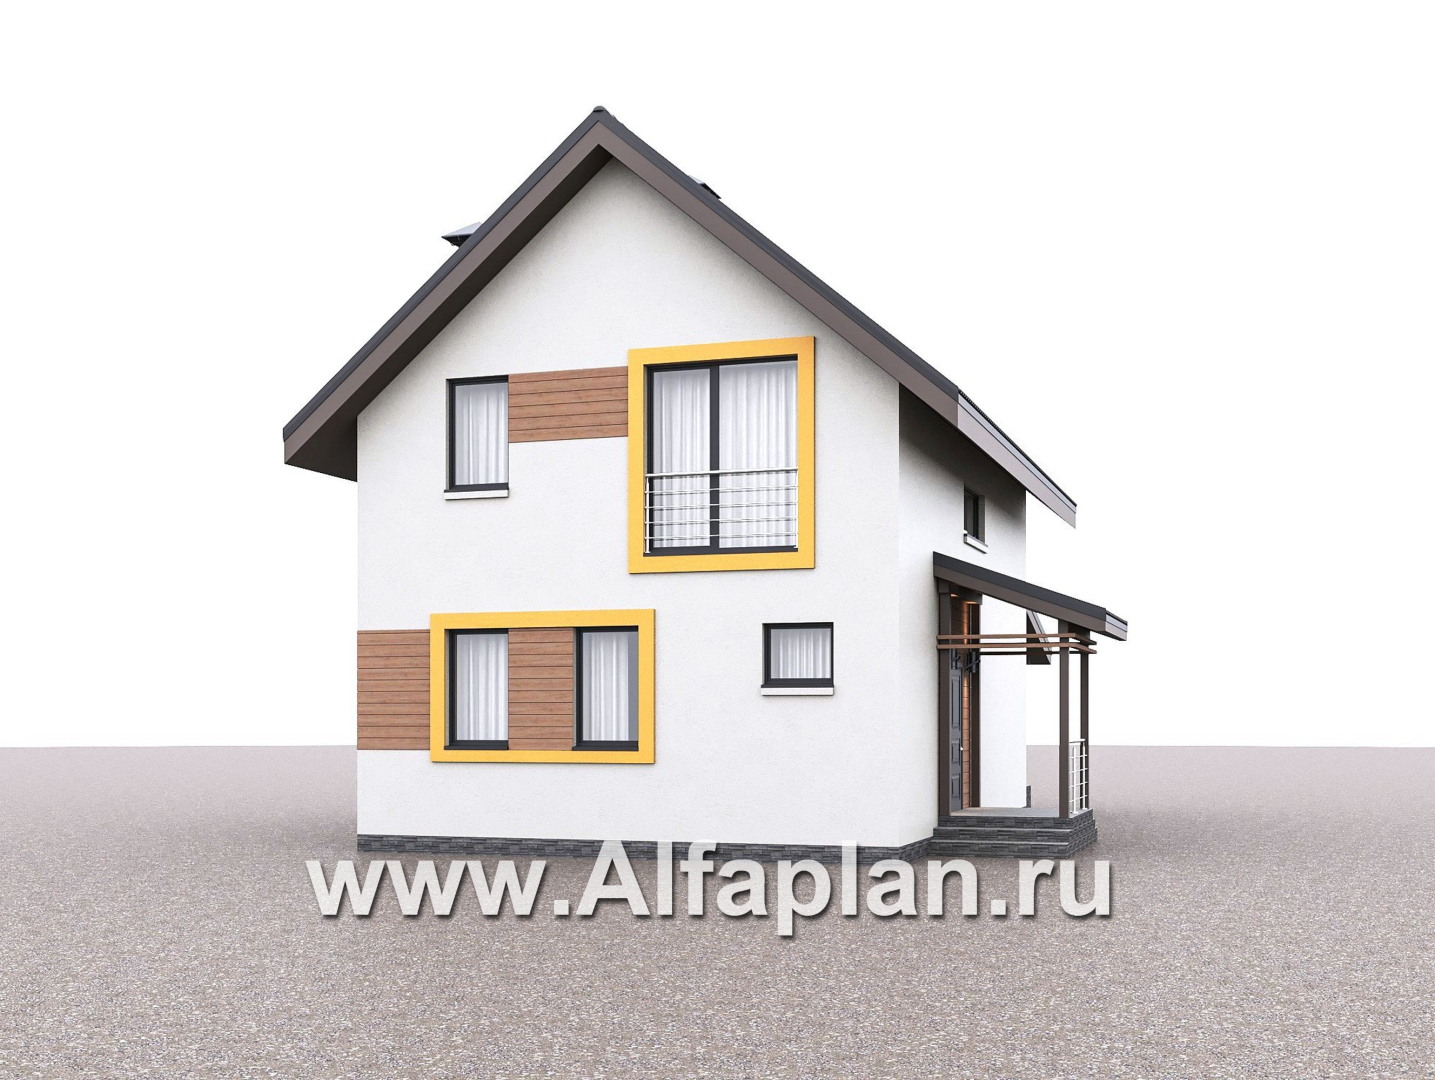 Проекты домов Альфаплан - "Викинг" - проект дома, 2 этажа, с сауной и с террасой, в скандинавском стиле - дополнительное изображение №1